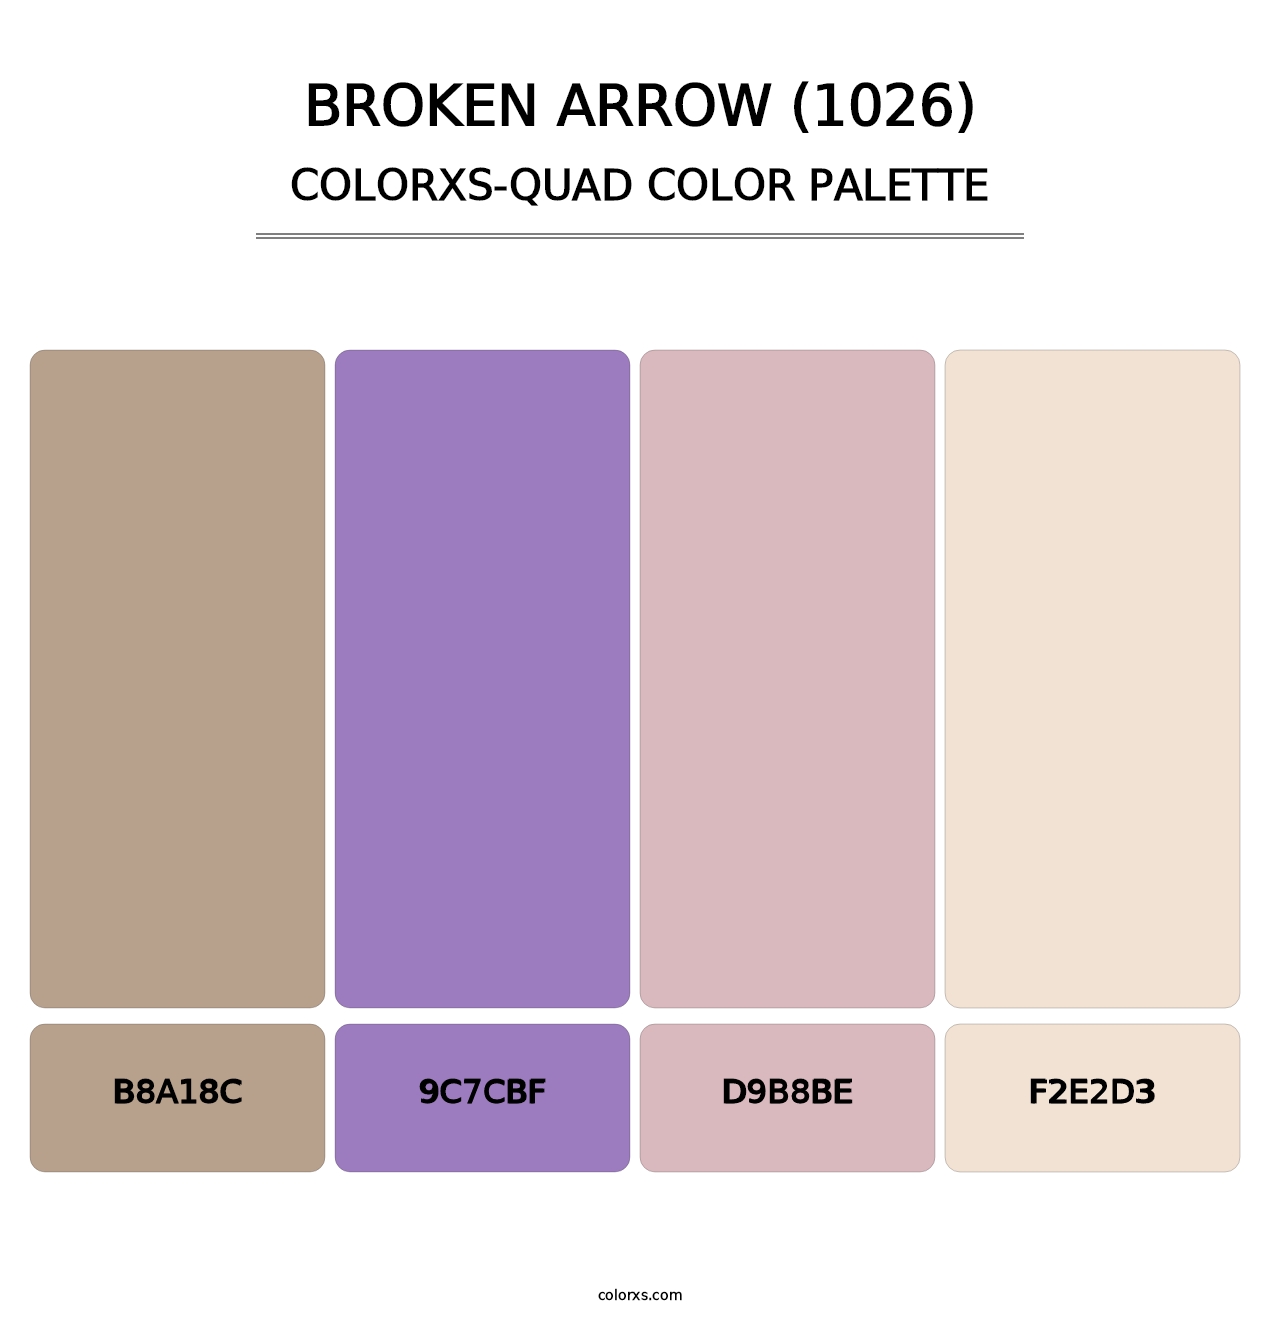 Broken Arrow (1026) - Colorxs Quad Palette